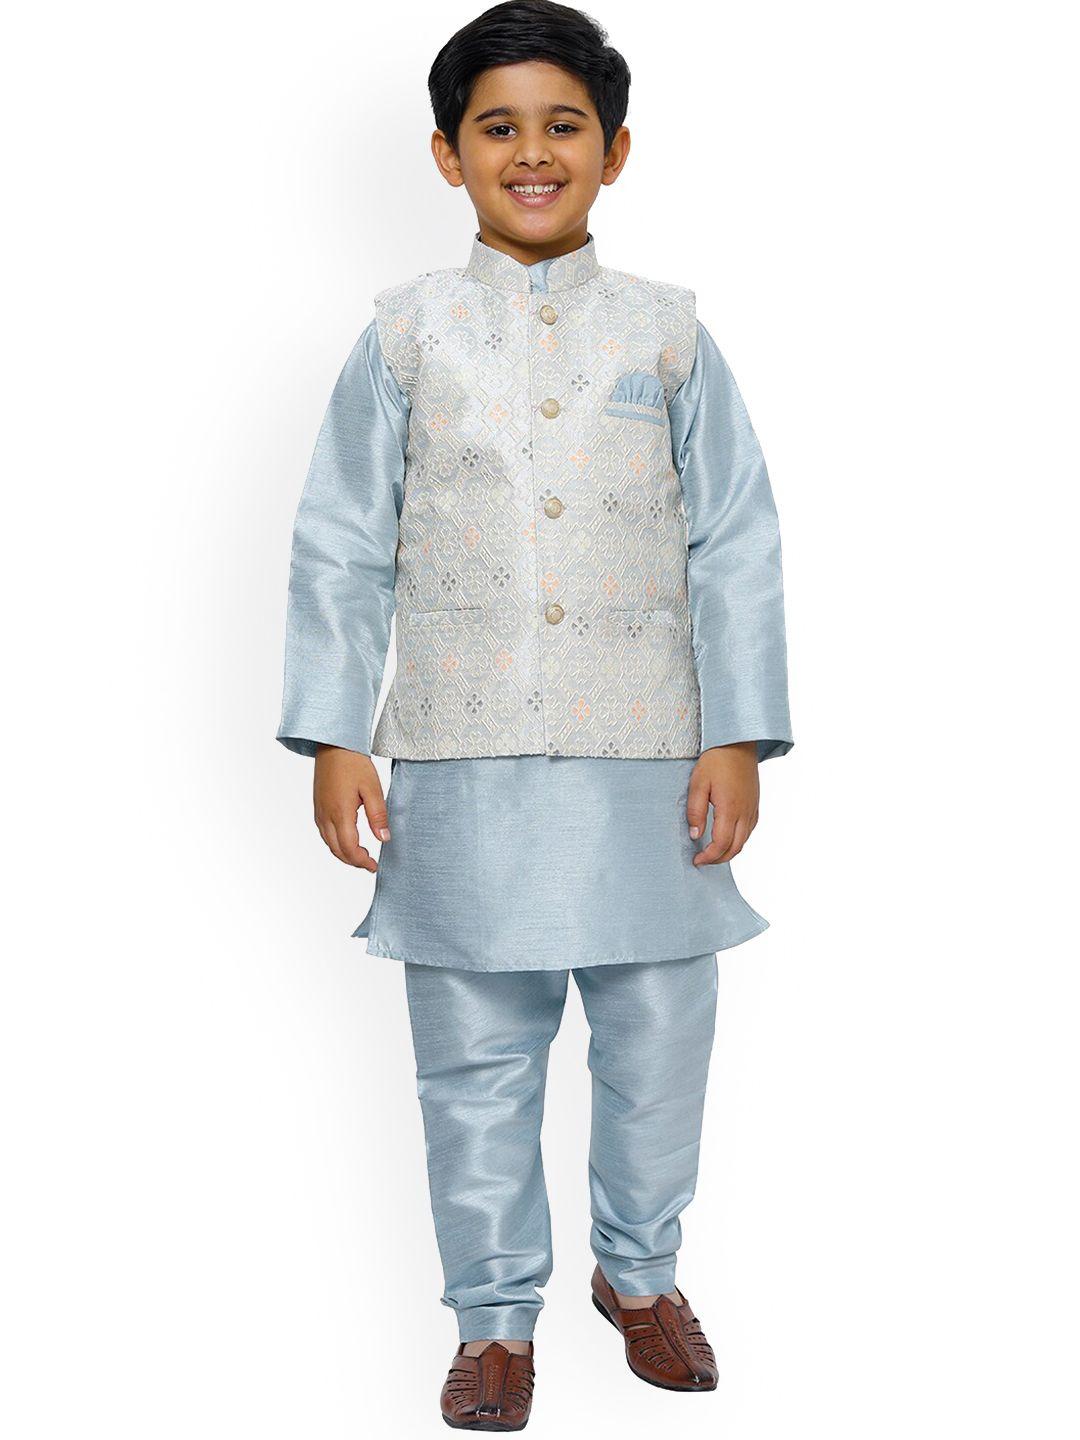 pro-ethic style developer boys embroidered kurta with pyjamas & jacket